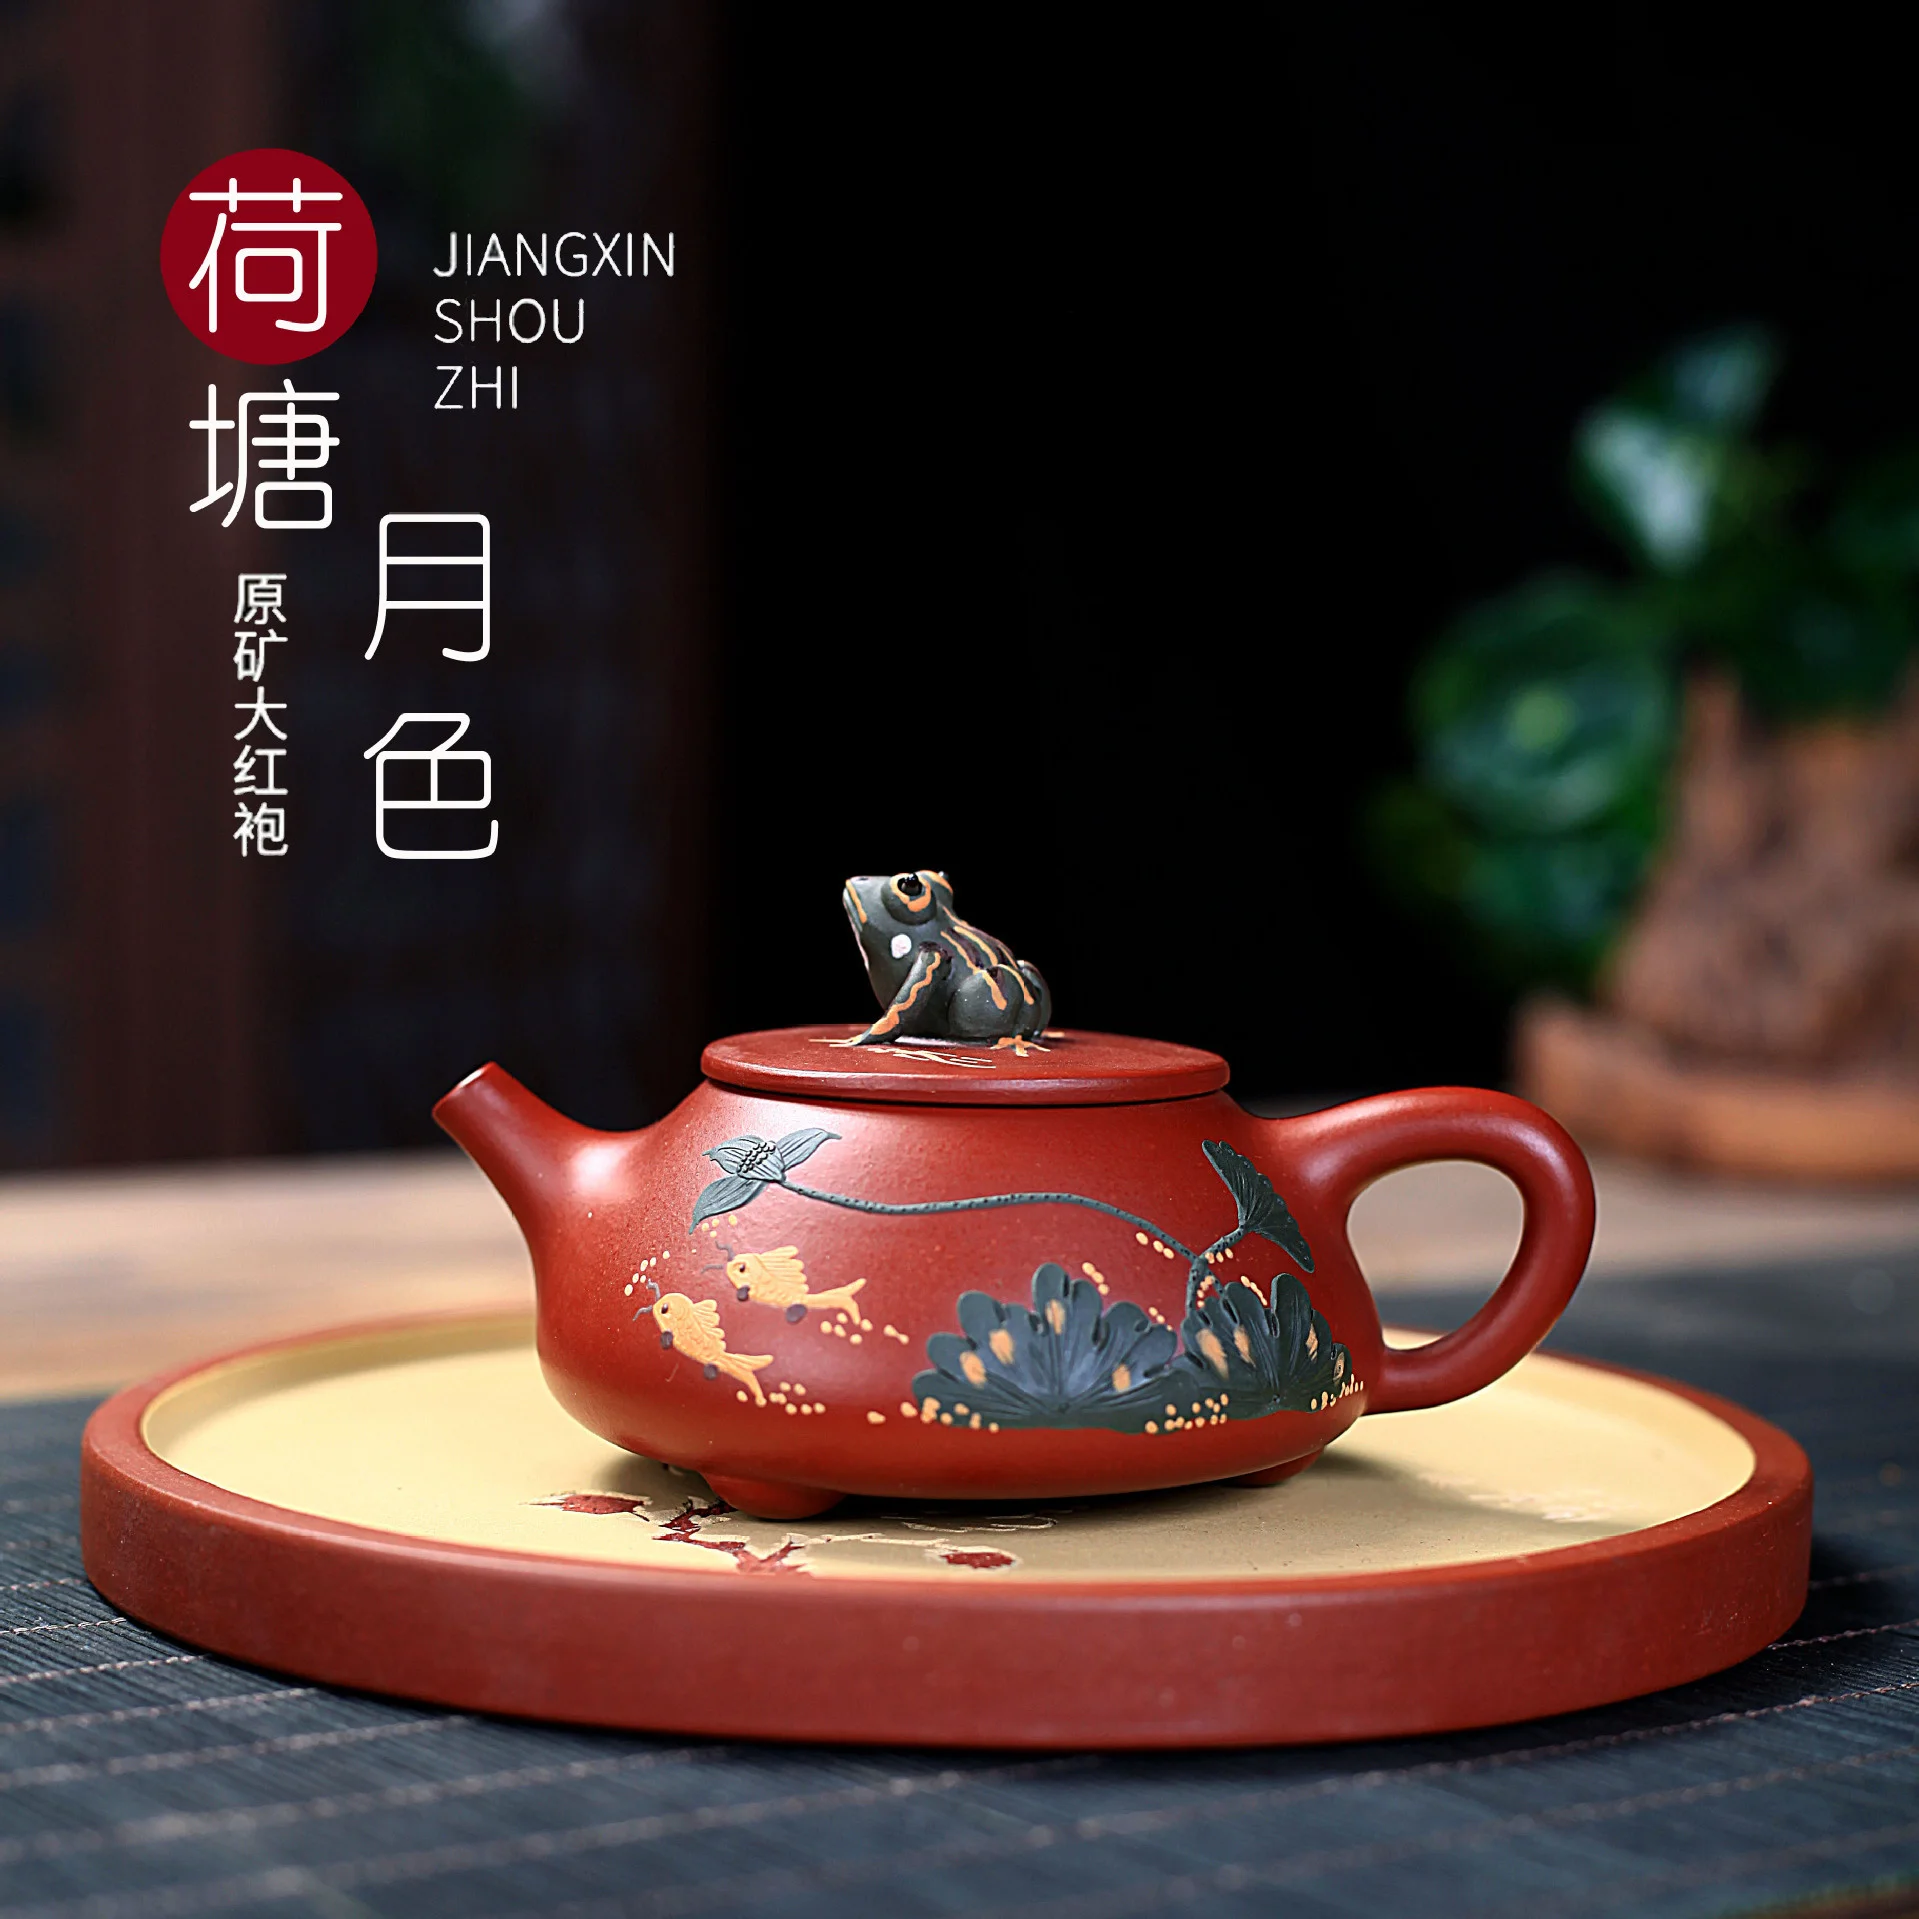 

Yixing чистый ручной работы Фиолетовый глиняный горшок сырая руда Dahongpao Лотос пруд лунный камень ковш пузырь лягушка чайный чайник чайный набо...